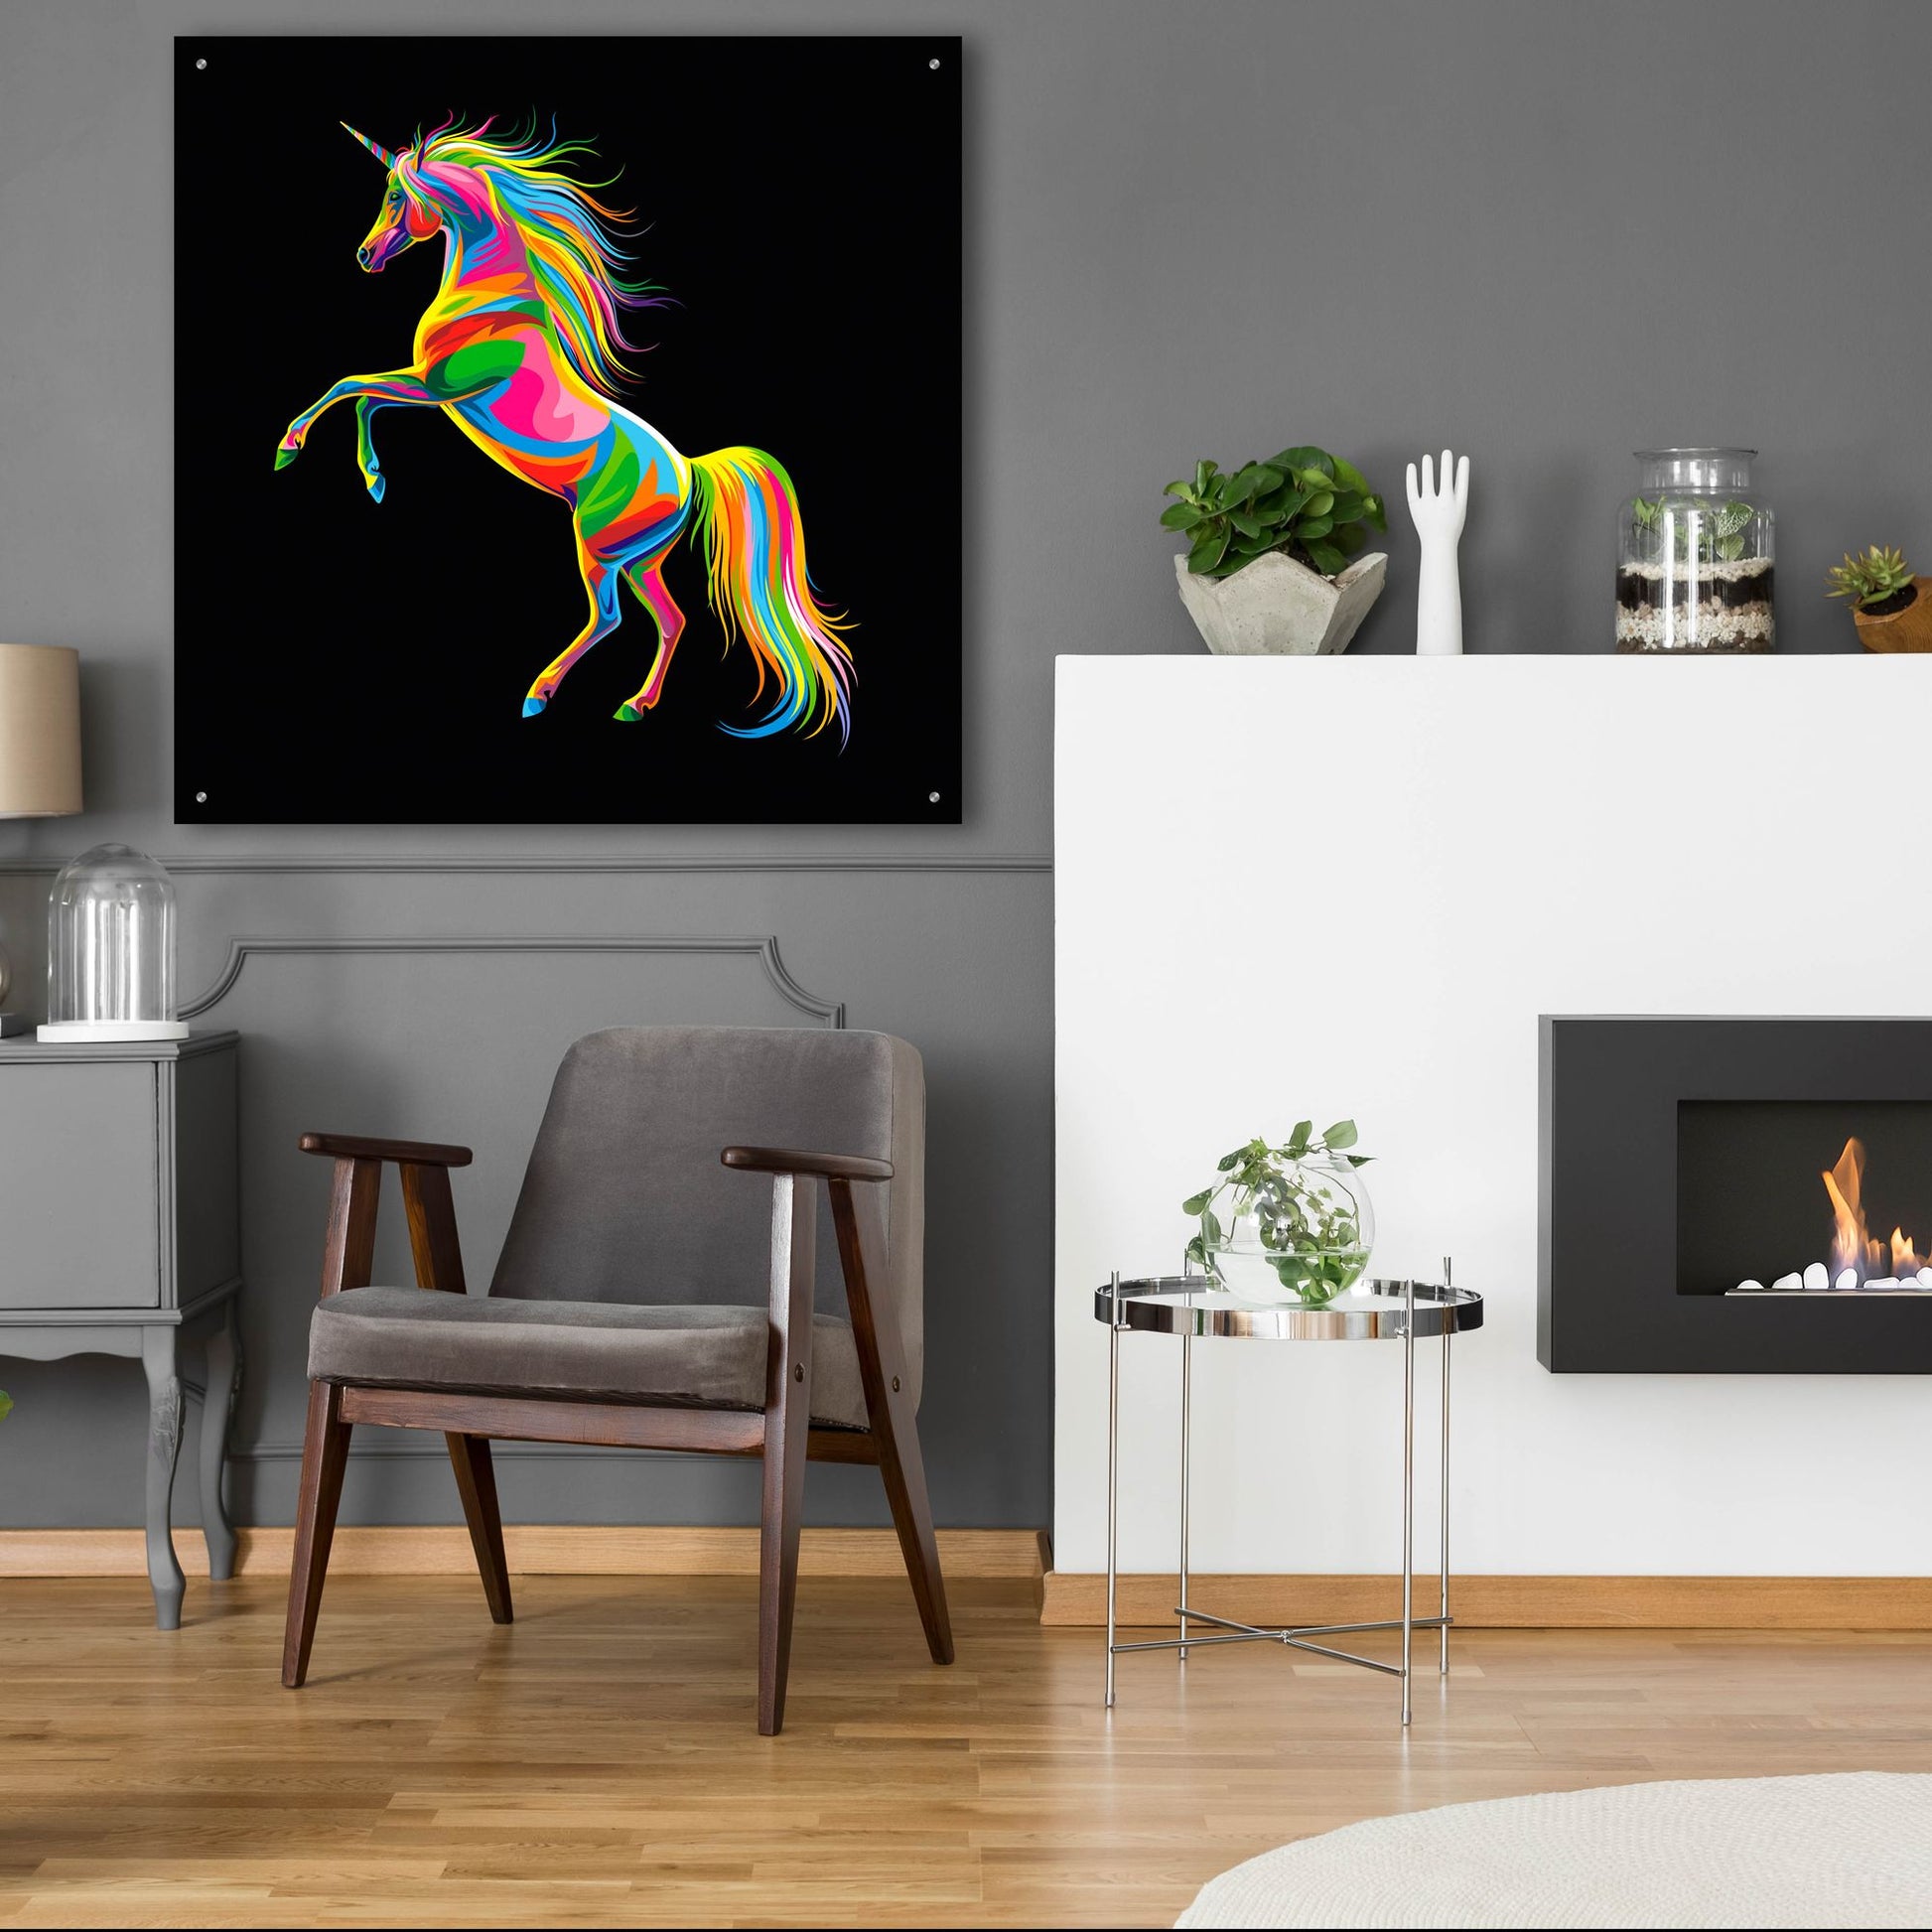 Epic Art 'Unicorn' by Bob Weer, Acrylic Glass Wall Art,36x36